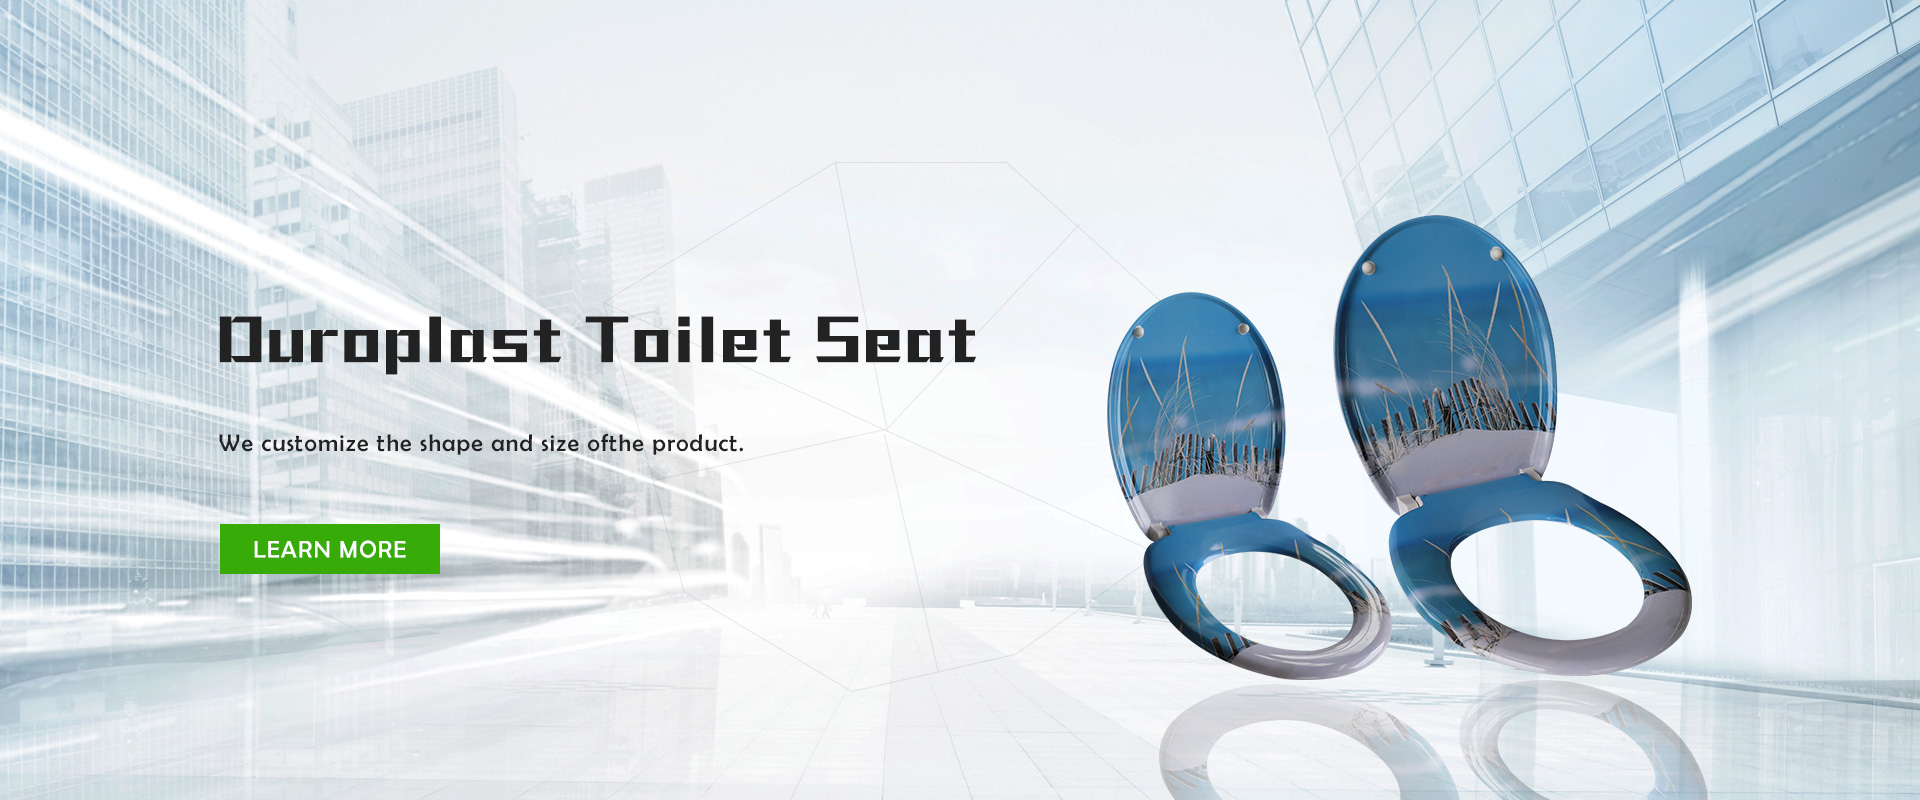 صندلی توالت دوروپلاست